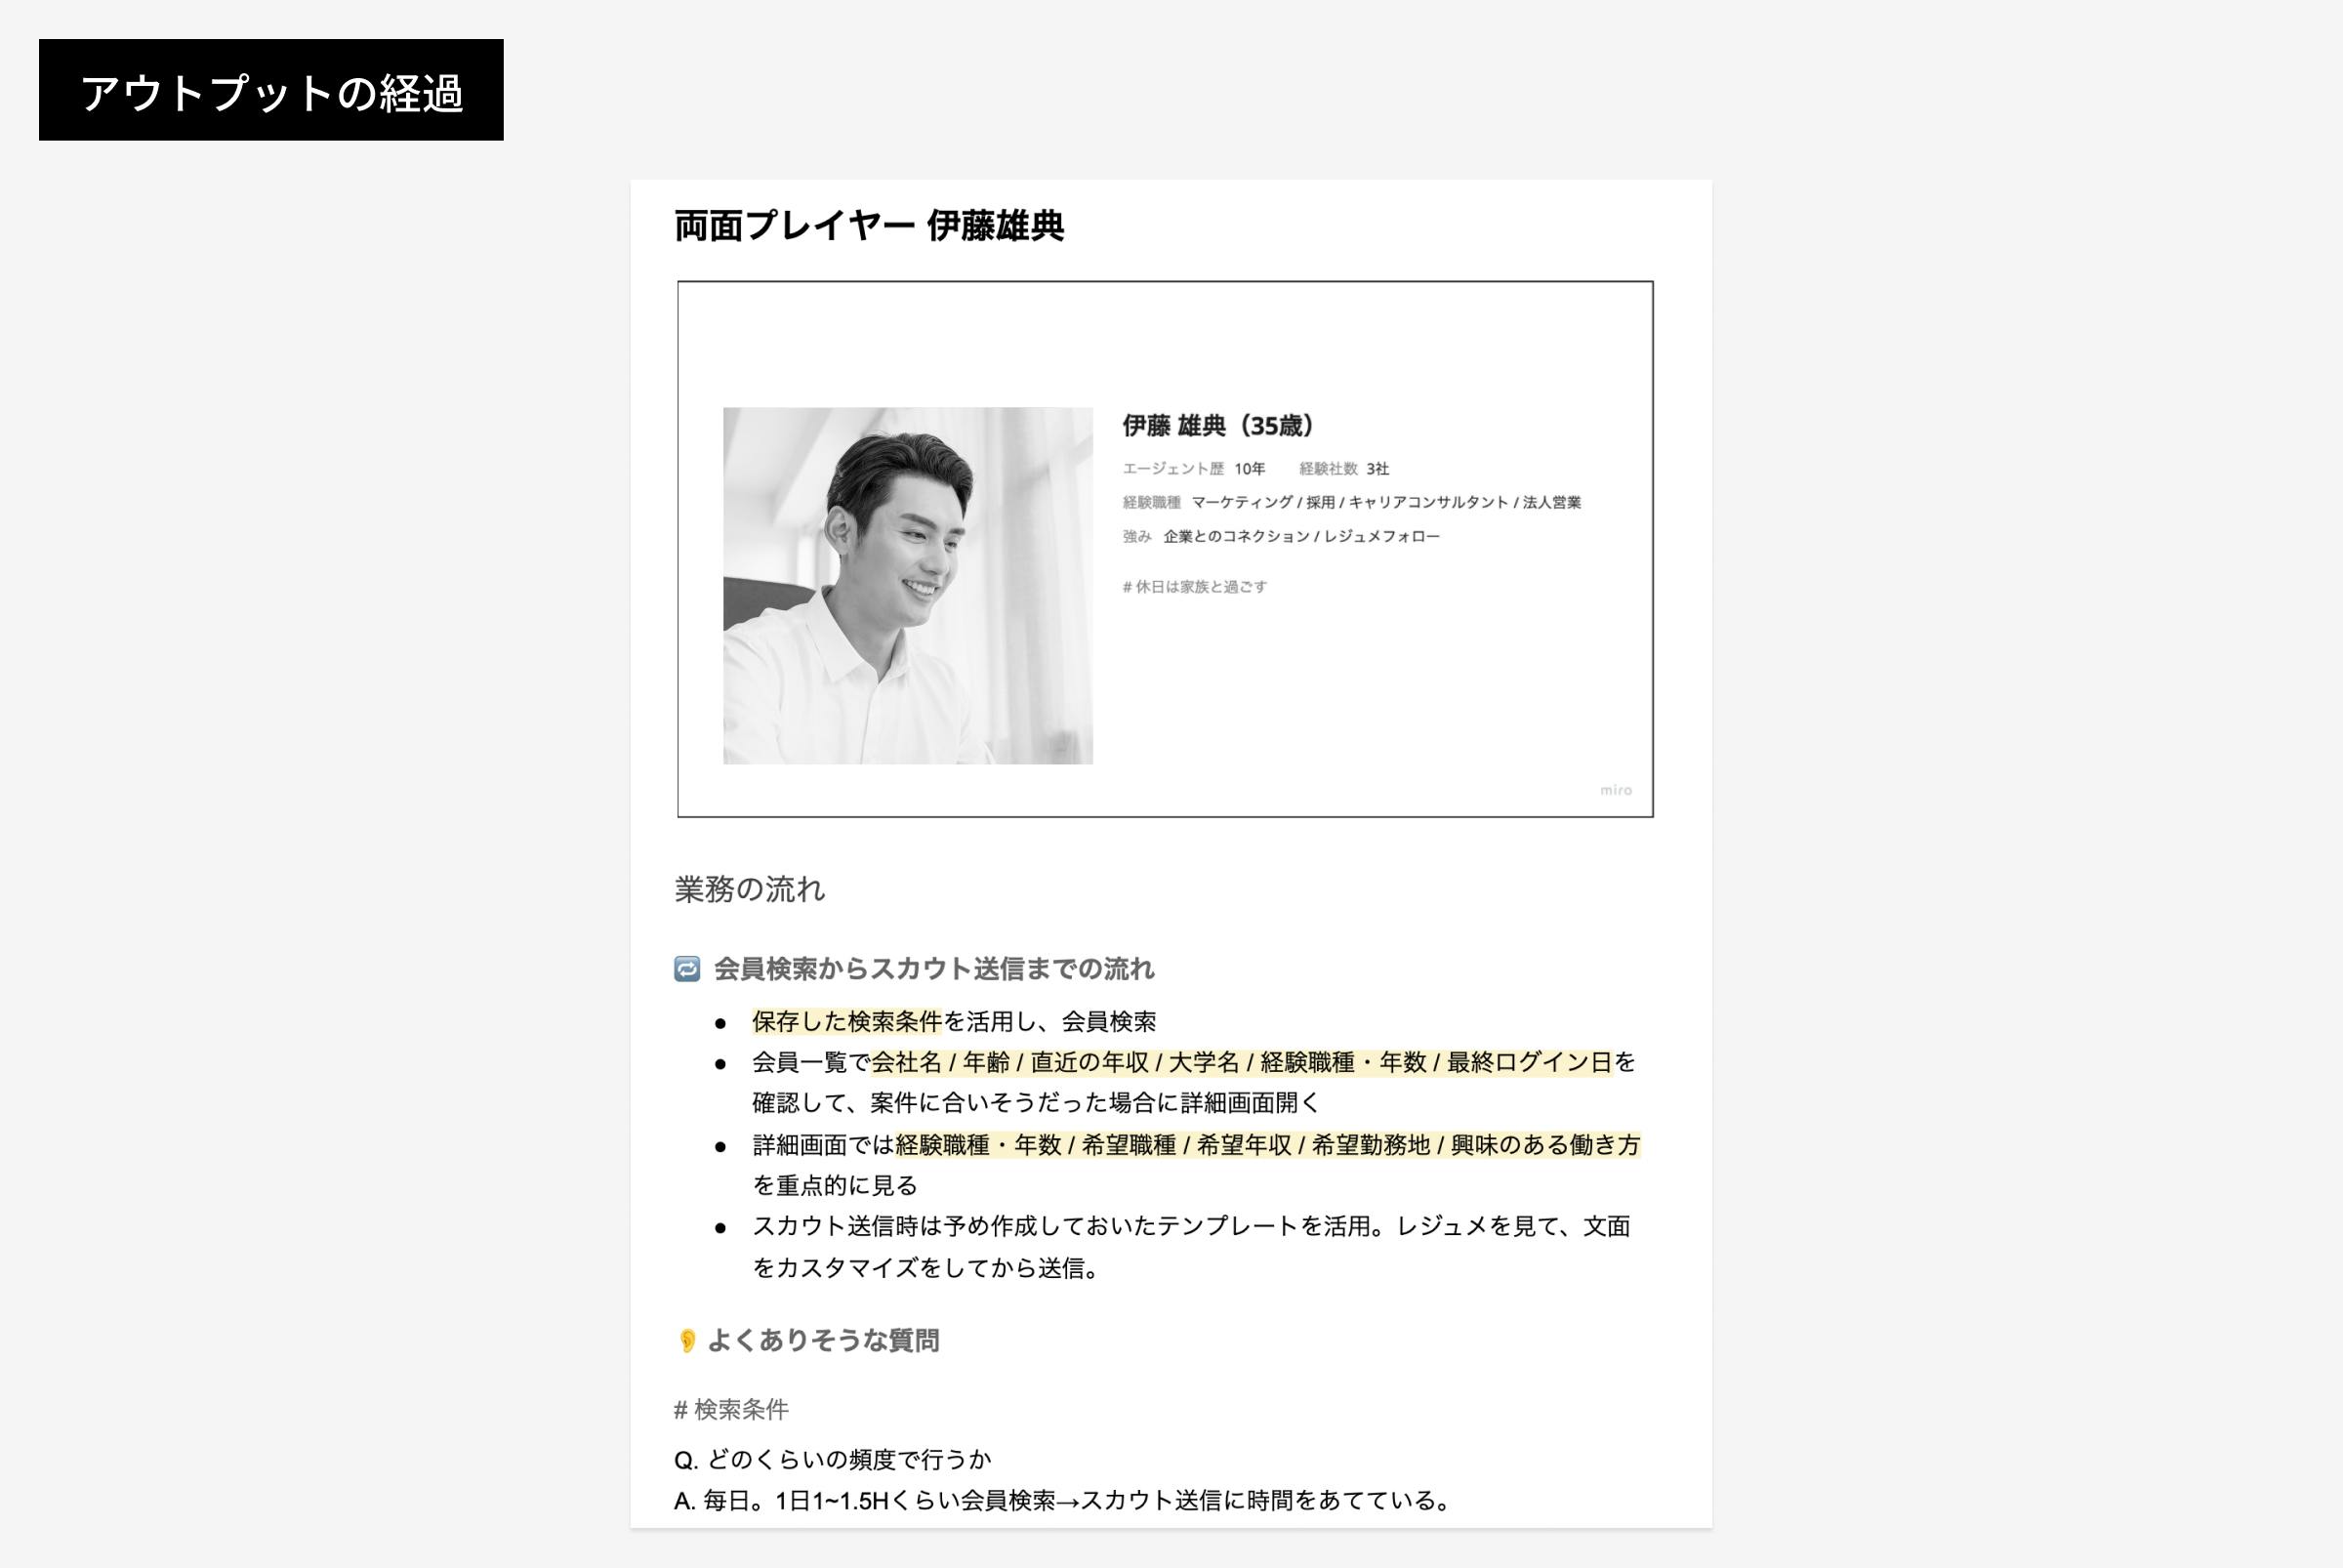 アウトプットの経過として、両面プレイヤー伊藤雄典さんの説明文とプロフィール写真を載せている。業務の流れとして、会員検索からスカウトまでの流れ、よくありそうな質問等が書かれている。